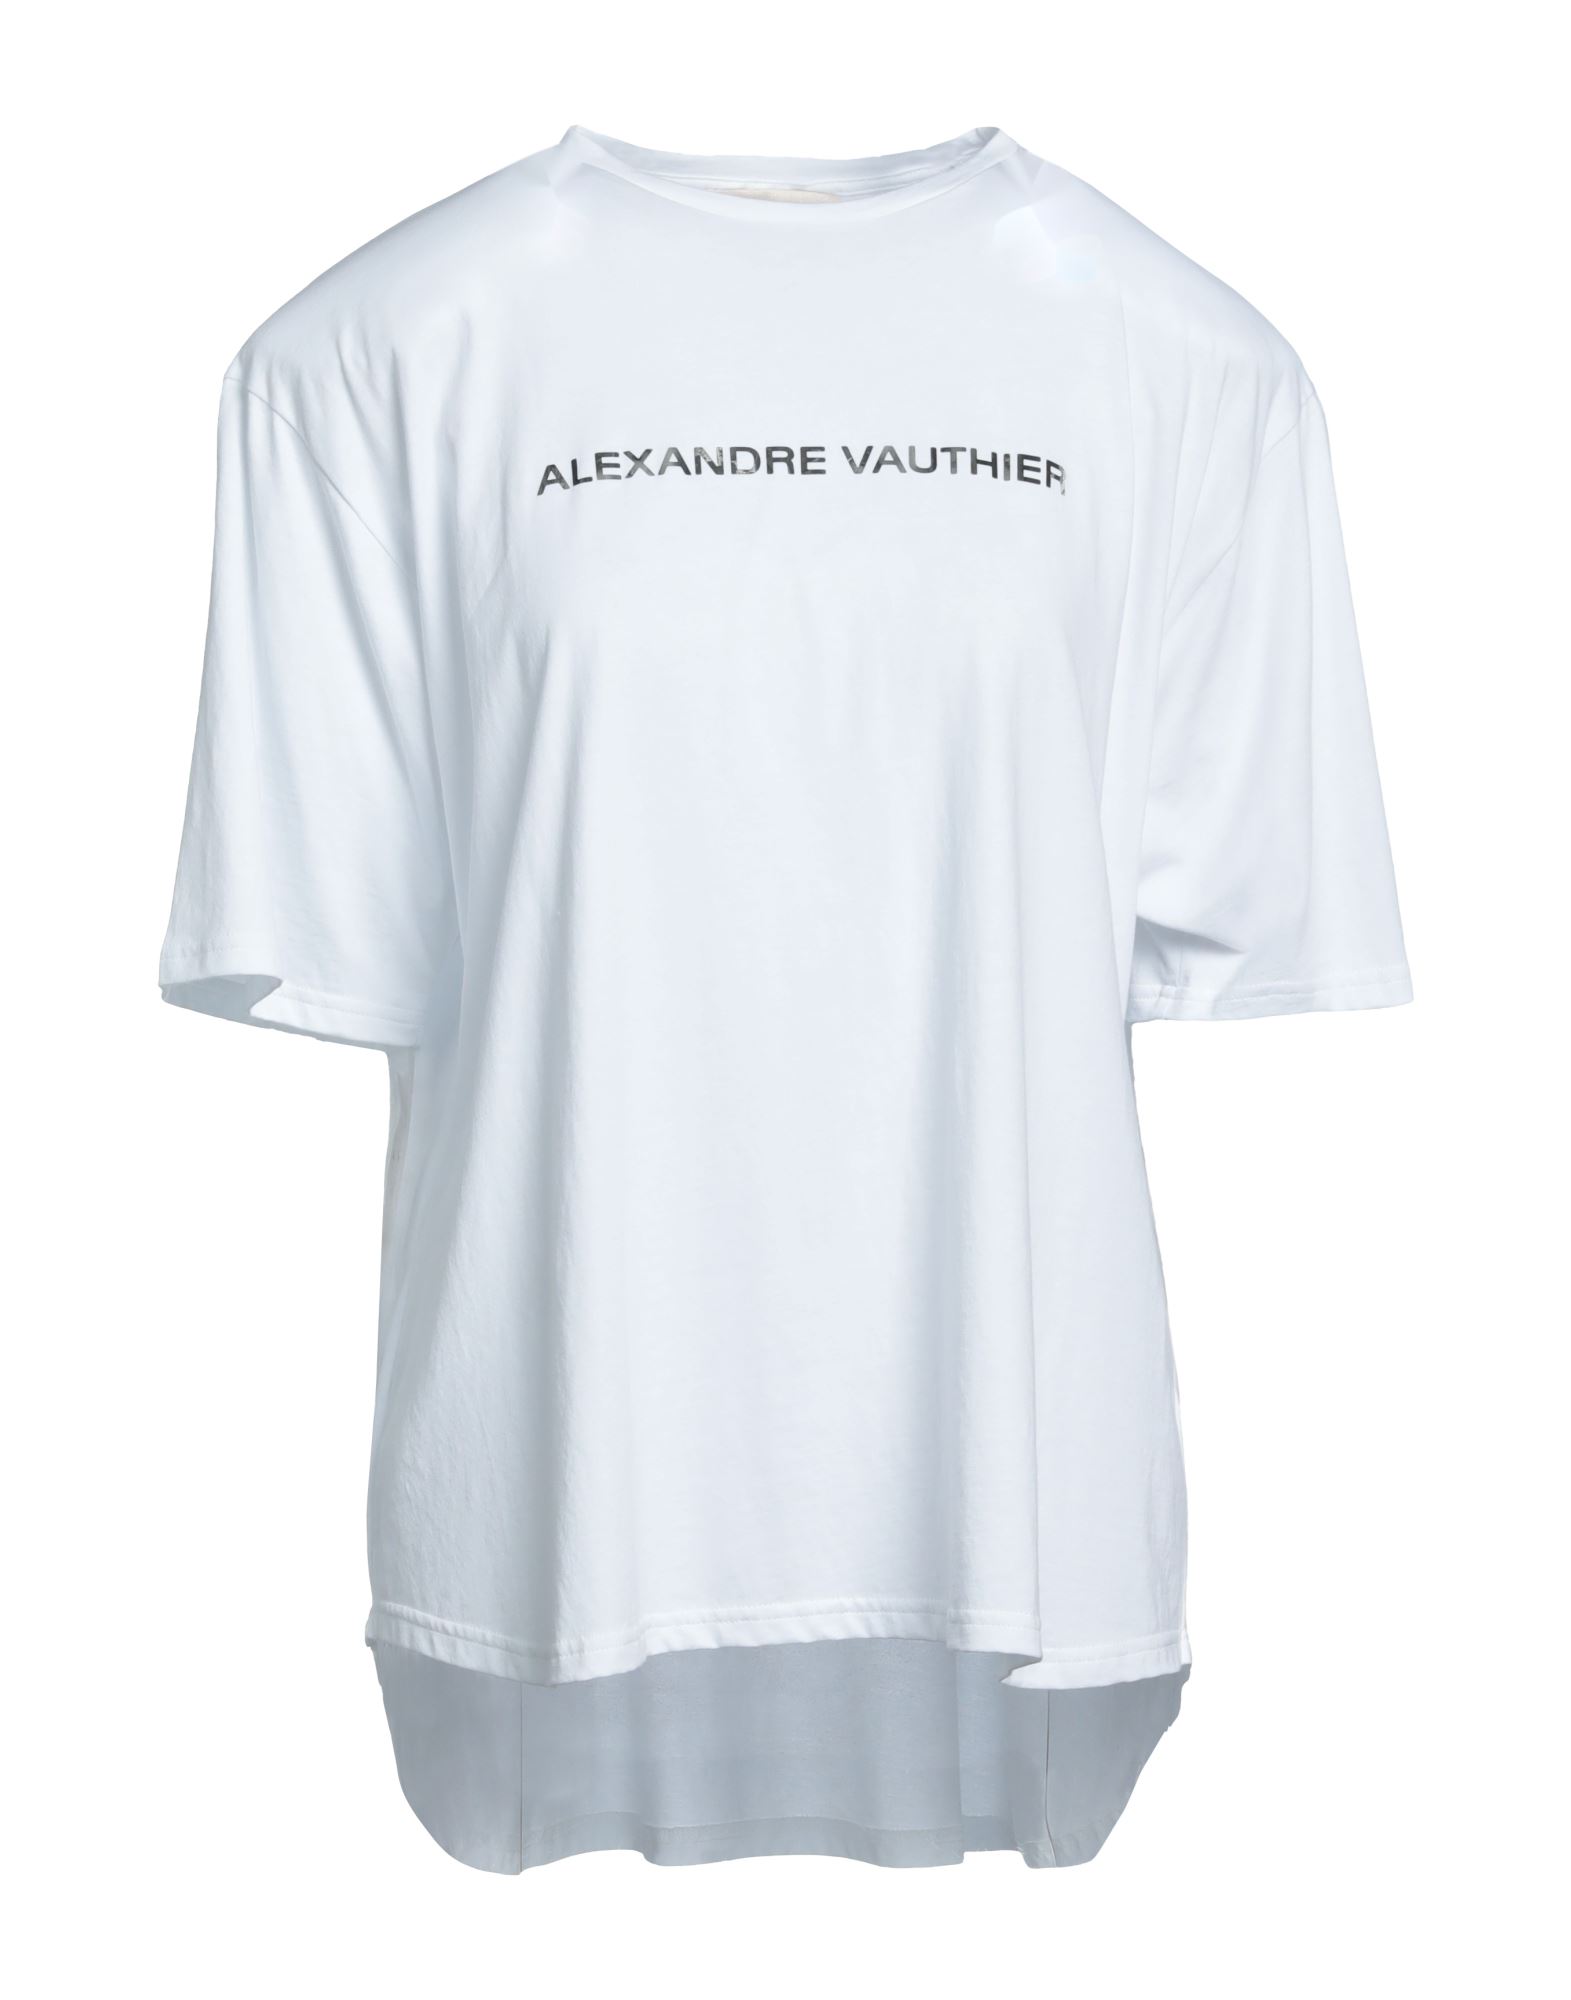 ALEXANDRE VAUTHIER T-shirts Damen Weiß von ALEXANDRE VAUTHIER